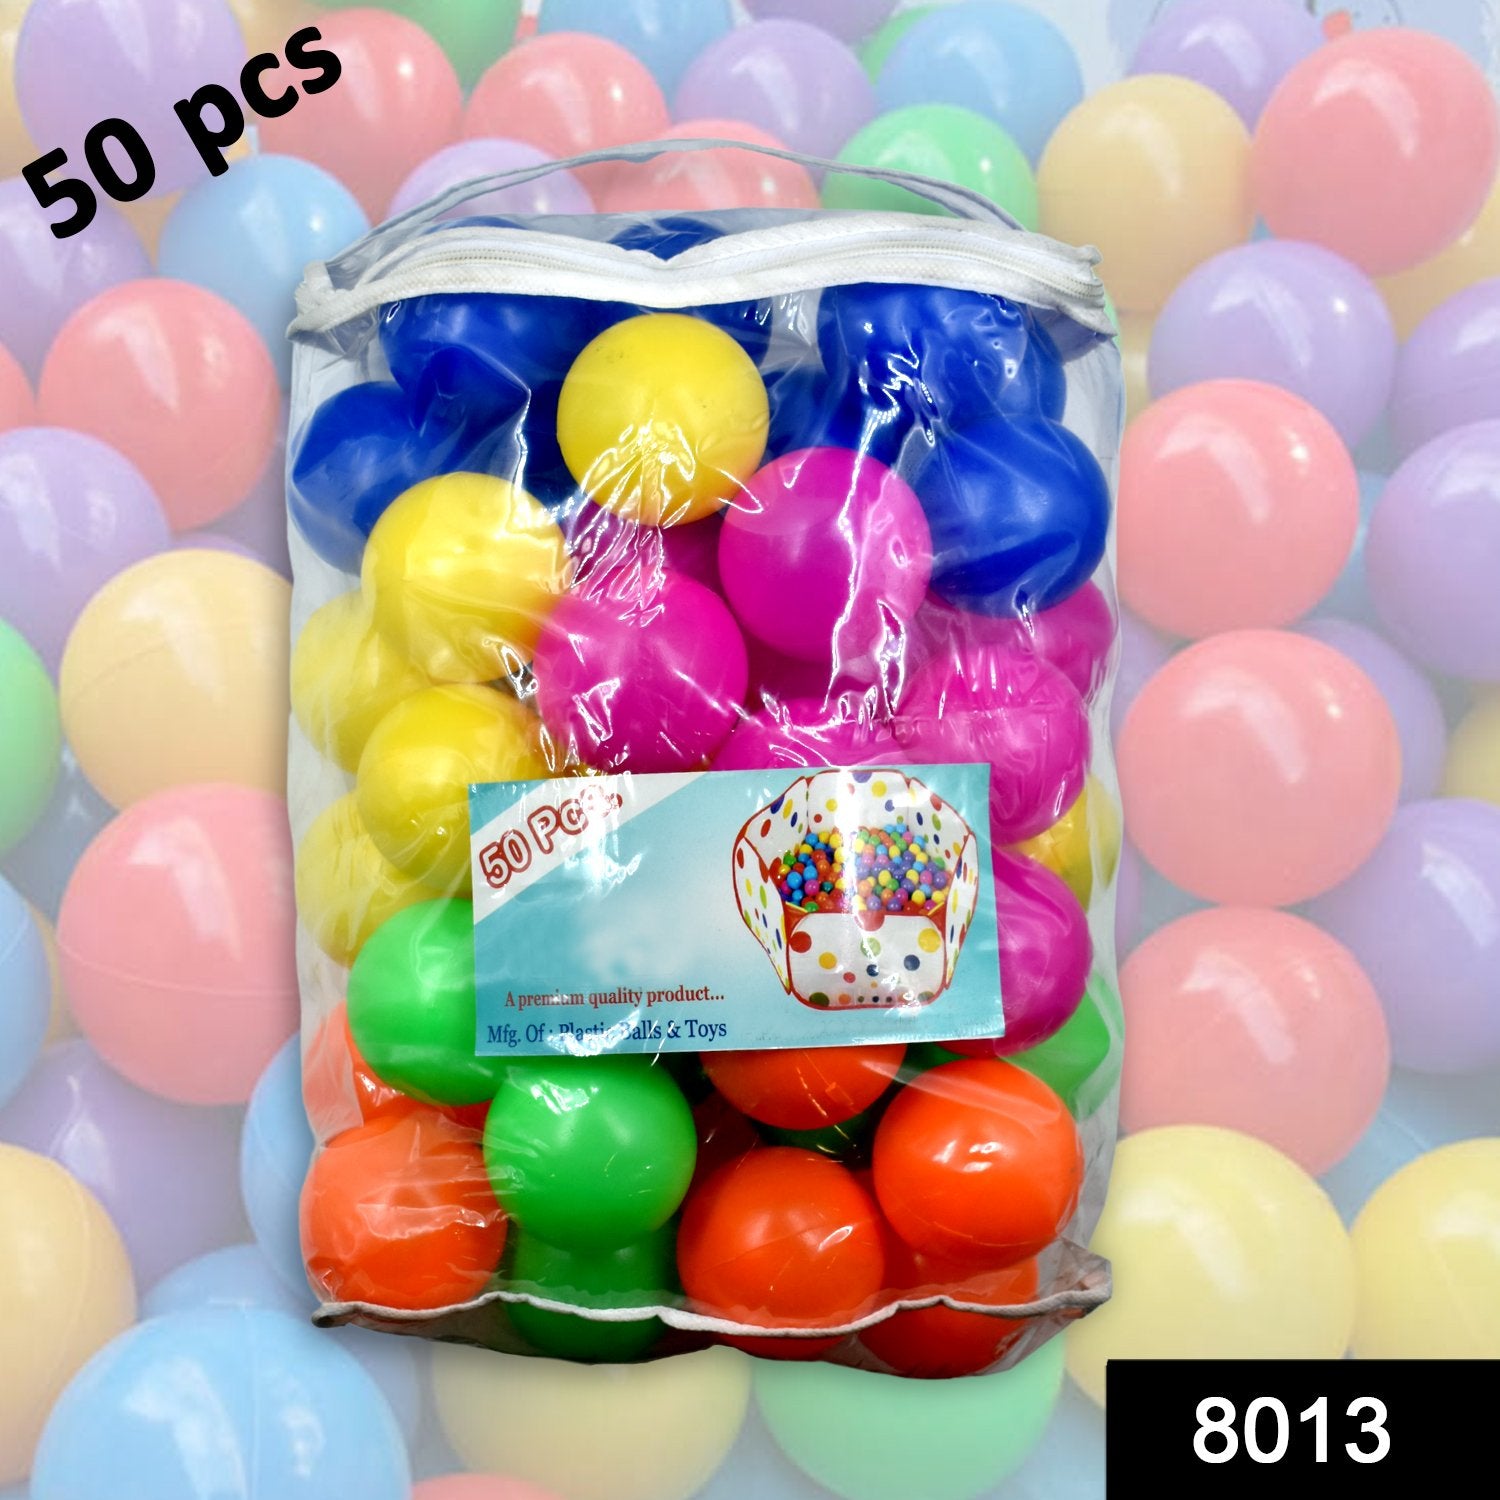 8013 Medium Size Premium Balls Color Balls for Kids Pool Balls Set (50 pcs)